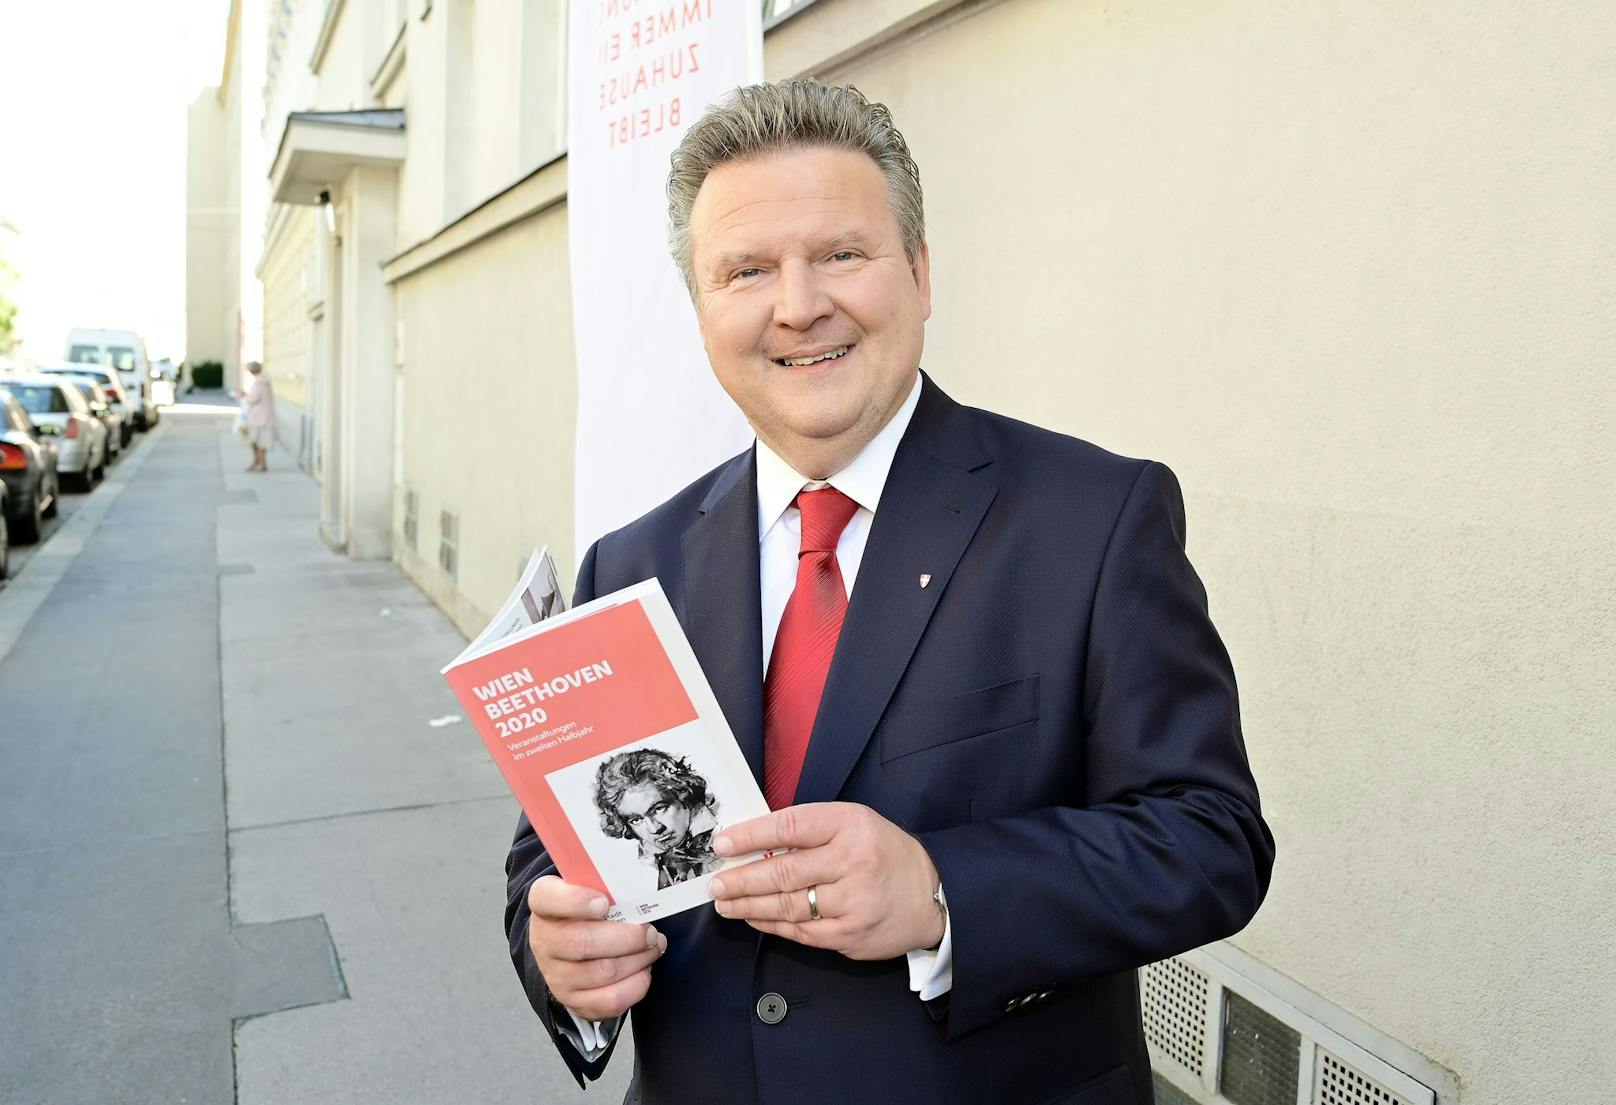 Stadtchef präsentiert Jubiläumsbuch zu Beethoven-Jahr